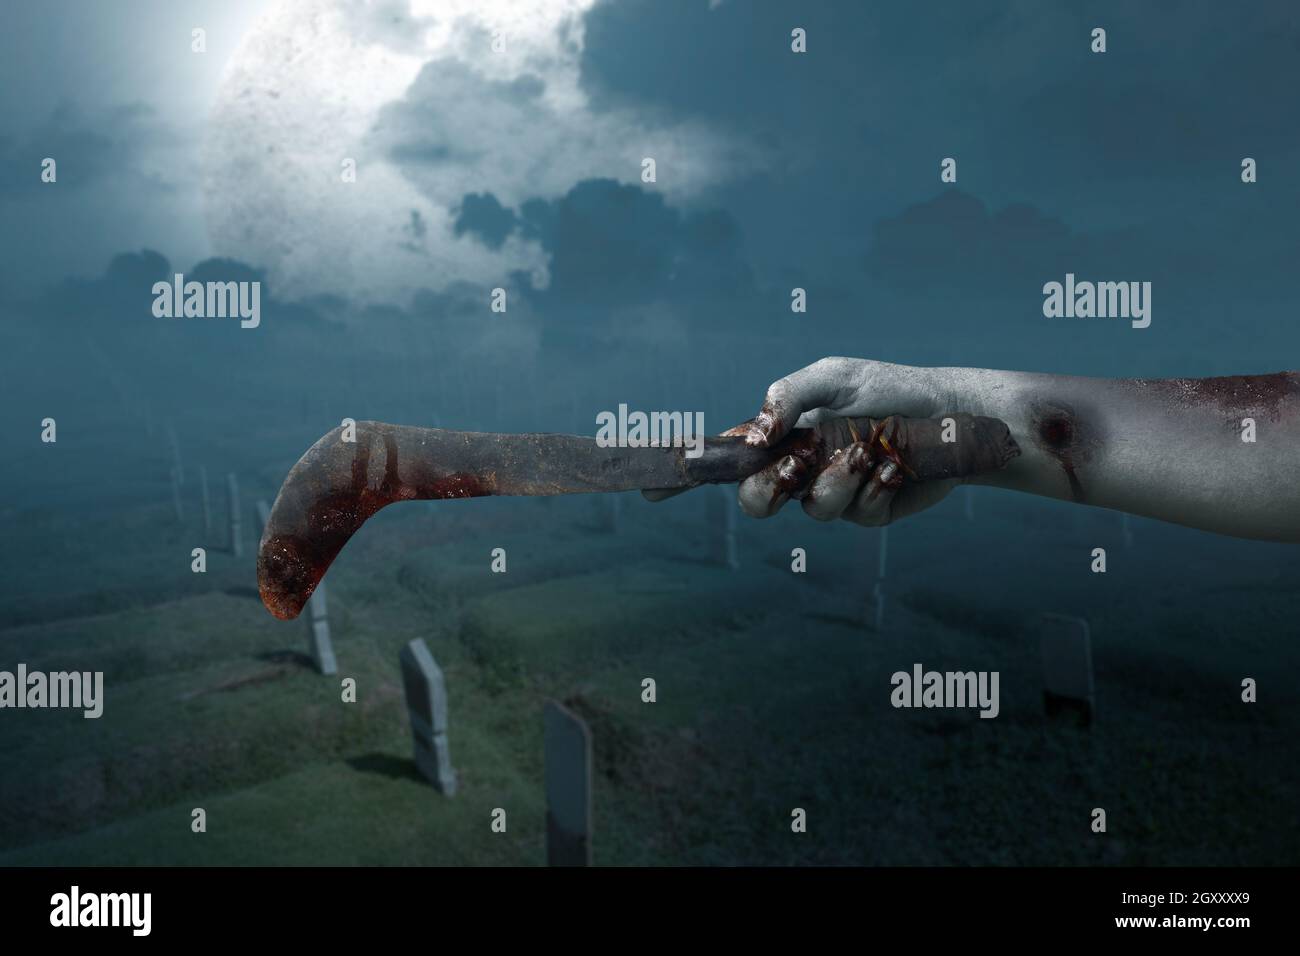 Zombie Hände mit Wunde halten Sichel mit der Nachtszene Hintergrund Stockfoto